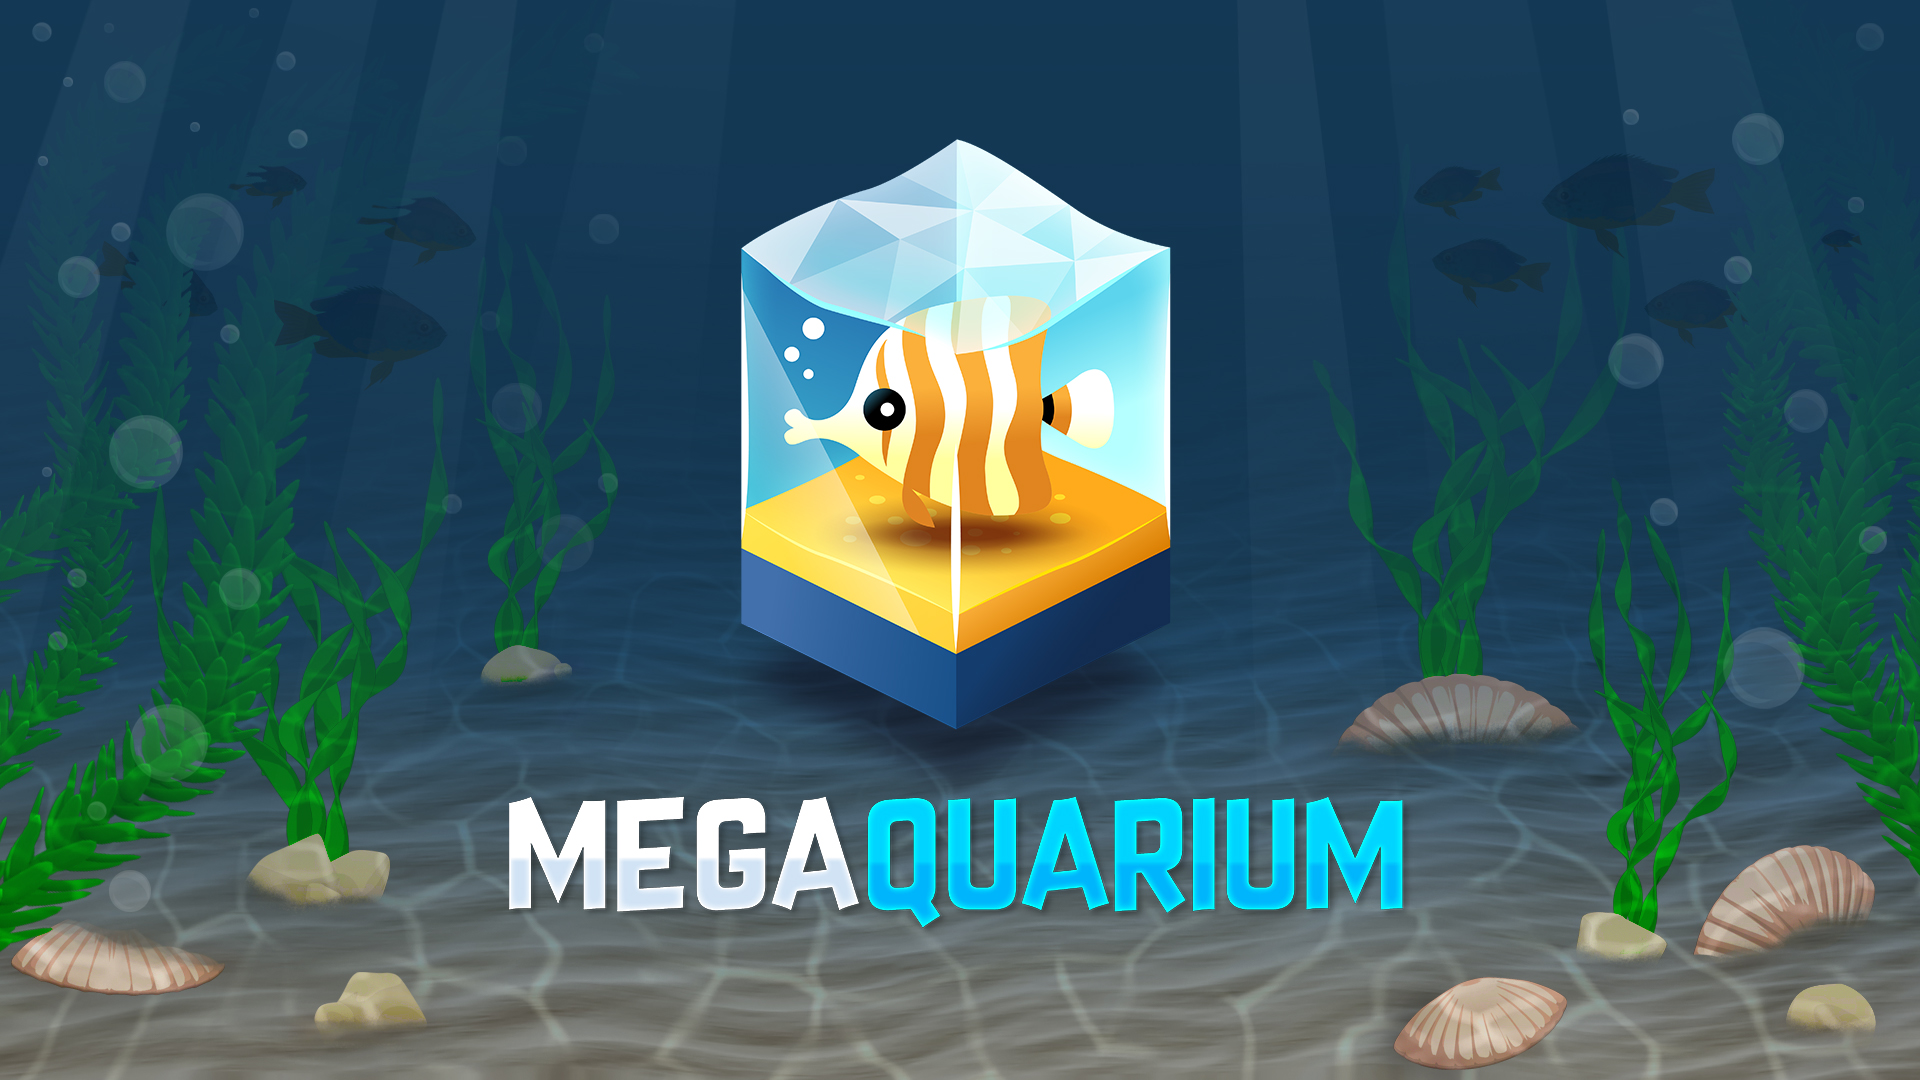 Megaquarium - náhled recenze